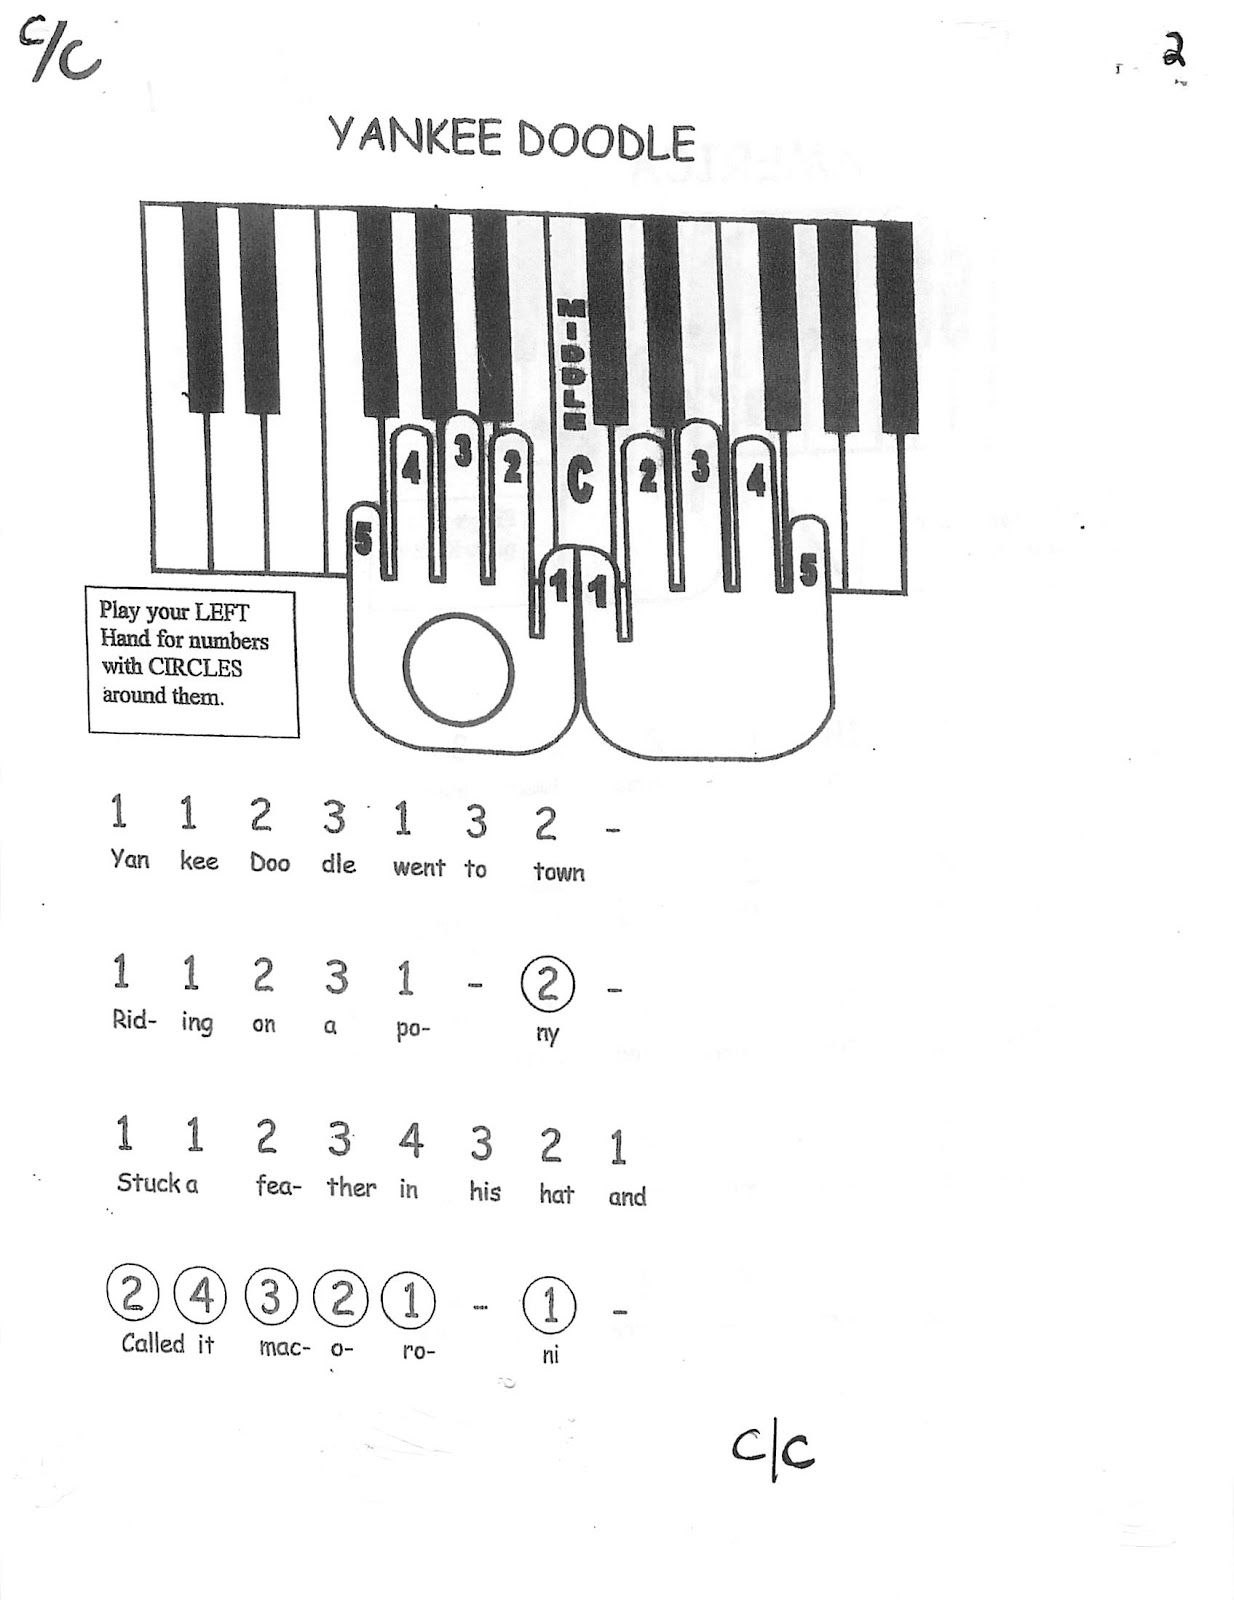 Играть по клавишам цифры. Схема клавиш синтезатора по цифрам.